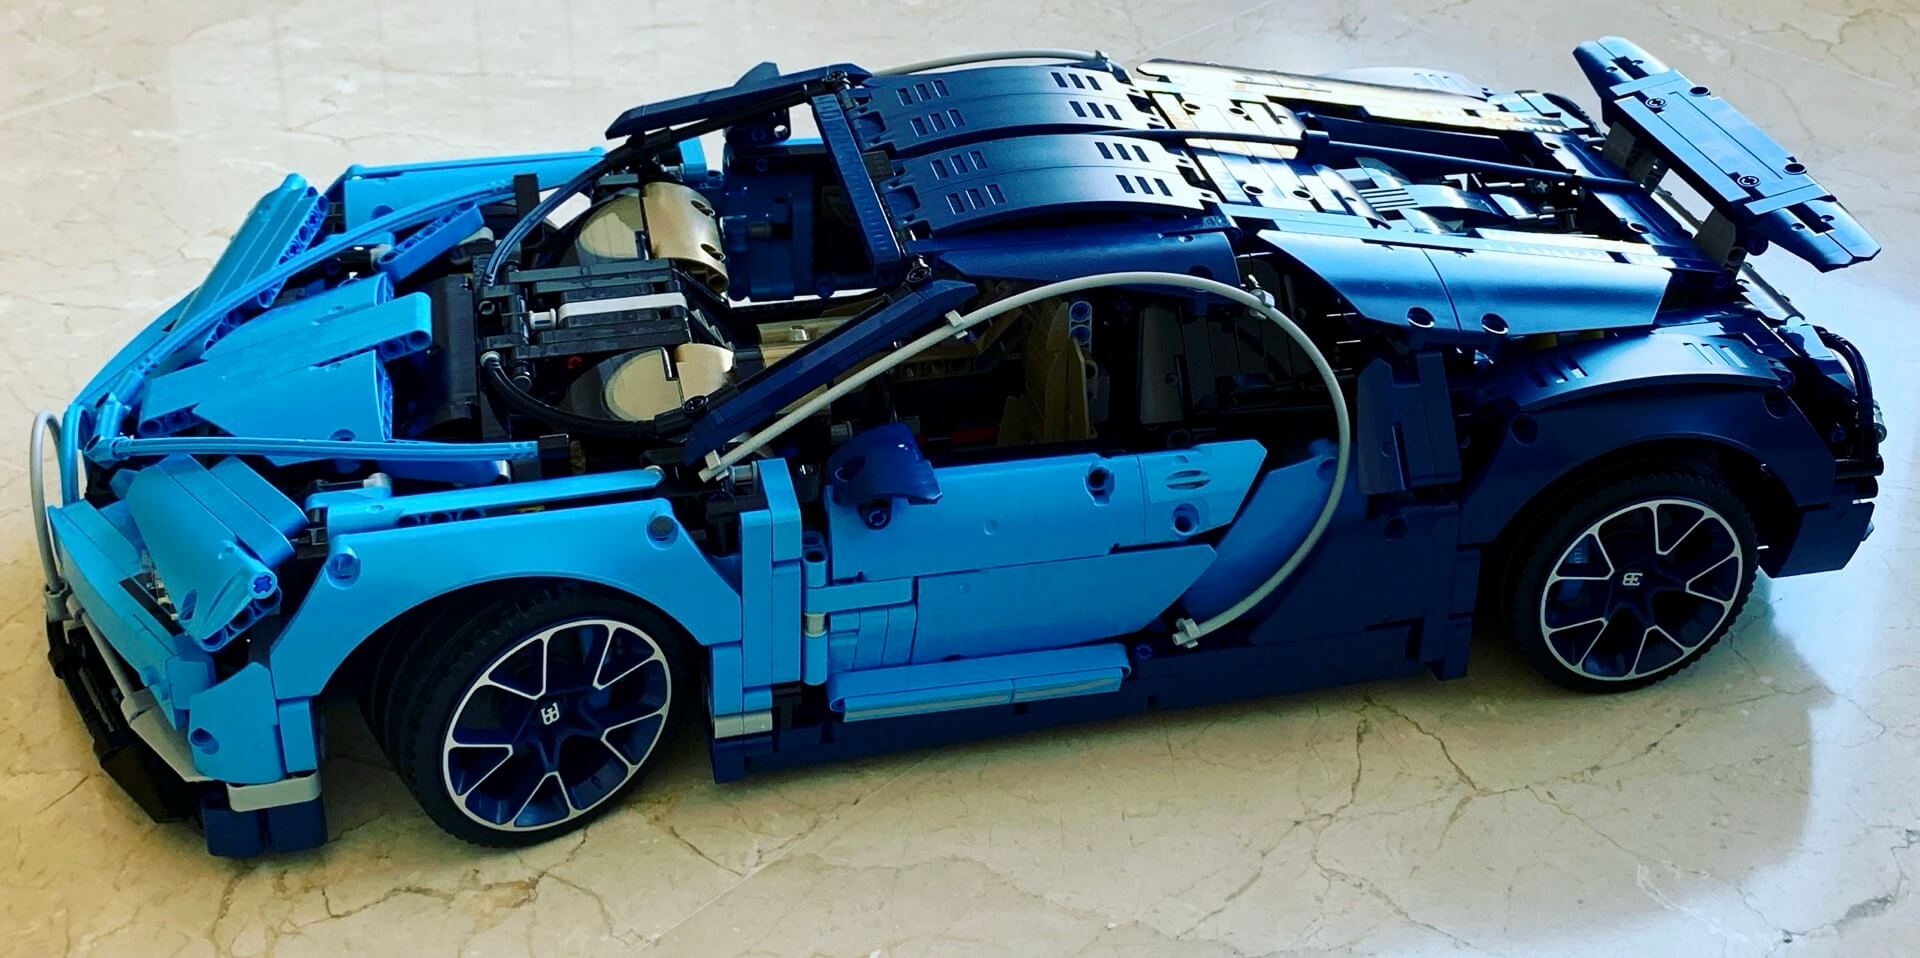 Building Bugatti Chiron Lego set back in 2018/19